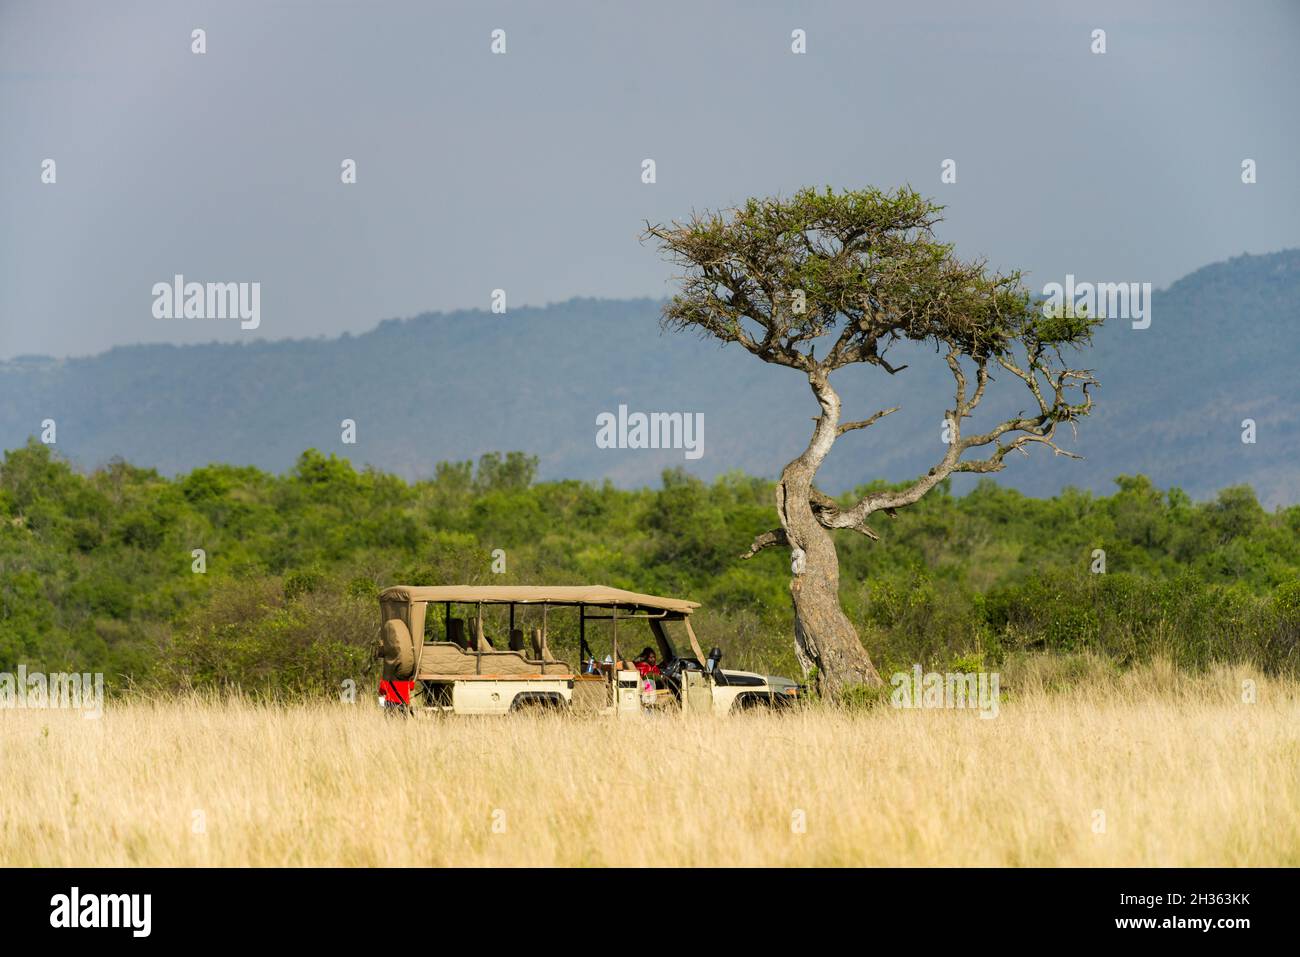 A 4x4 Toyota Landcruiser safari vehicle parked by a large tree amongst tall grass, Masai Mara, Kenya Stock Photo